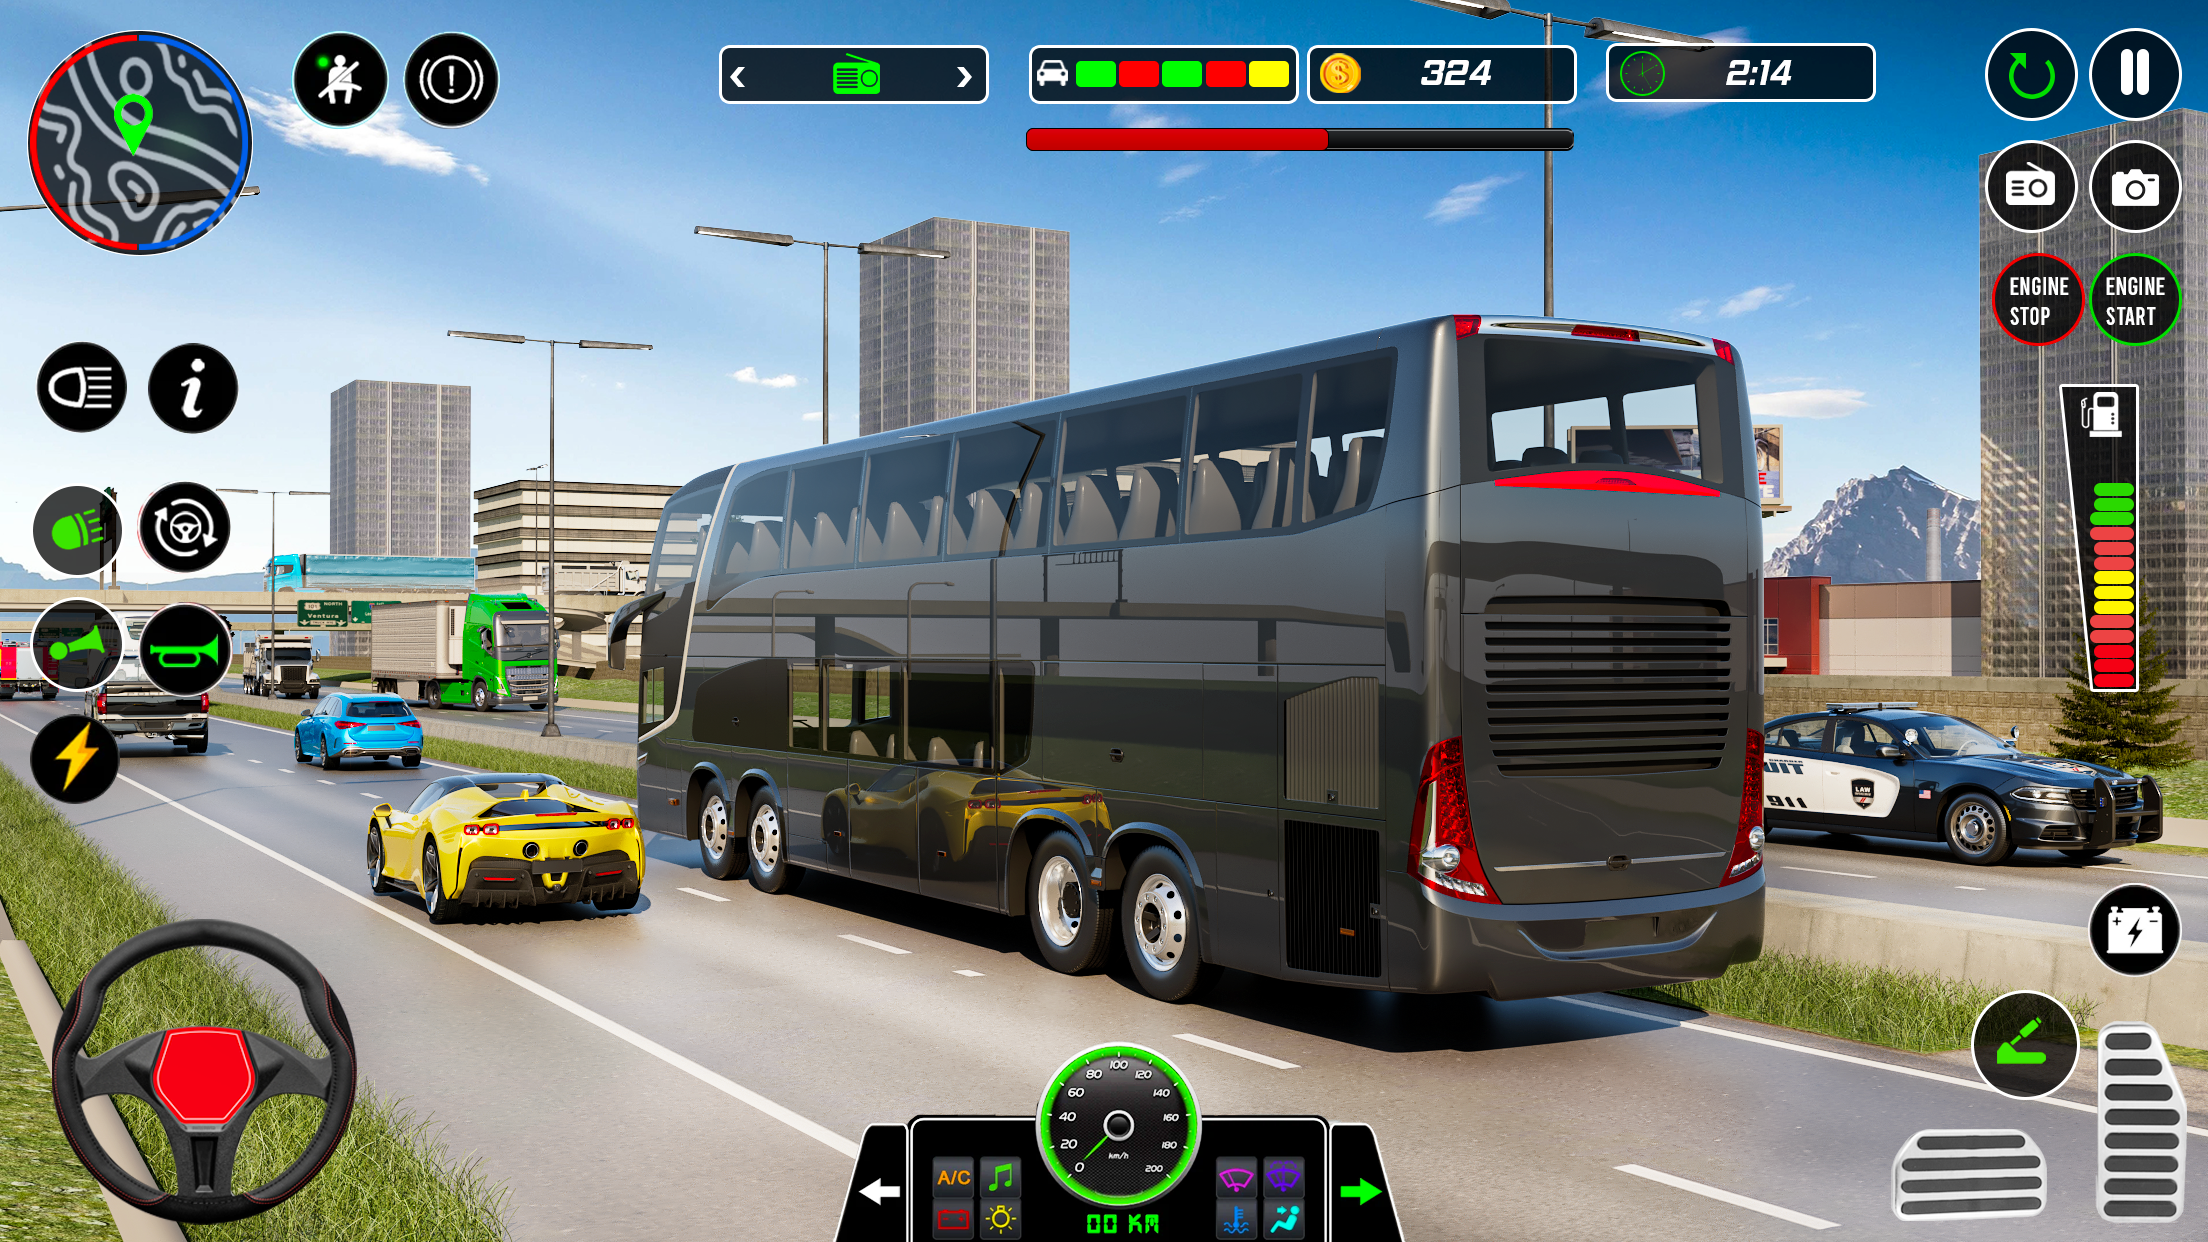 Screenshot 1 of Trò chơi mô phỏng xe buýt ngoại tuyến 3D 0.3